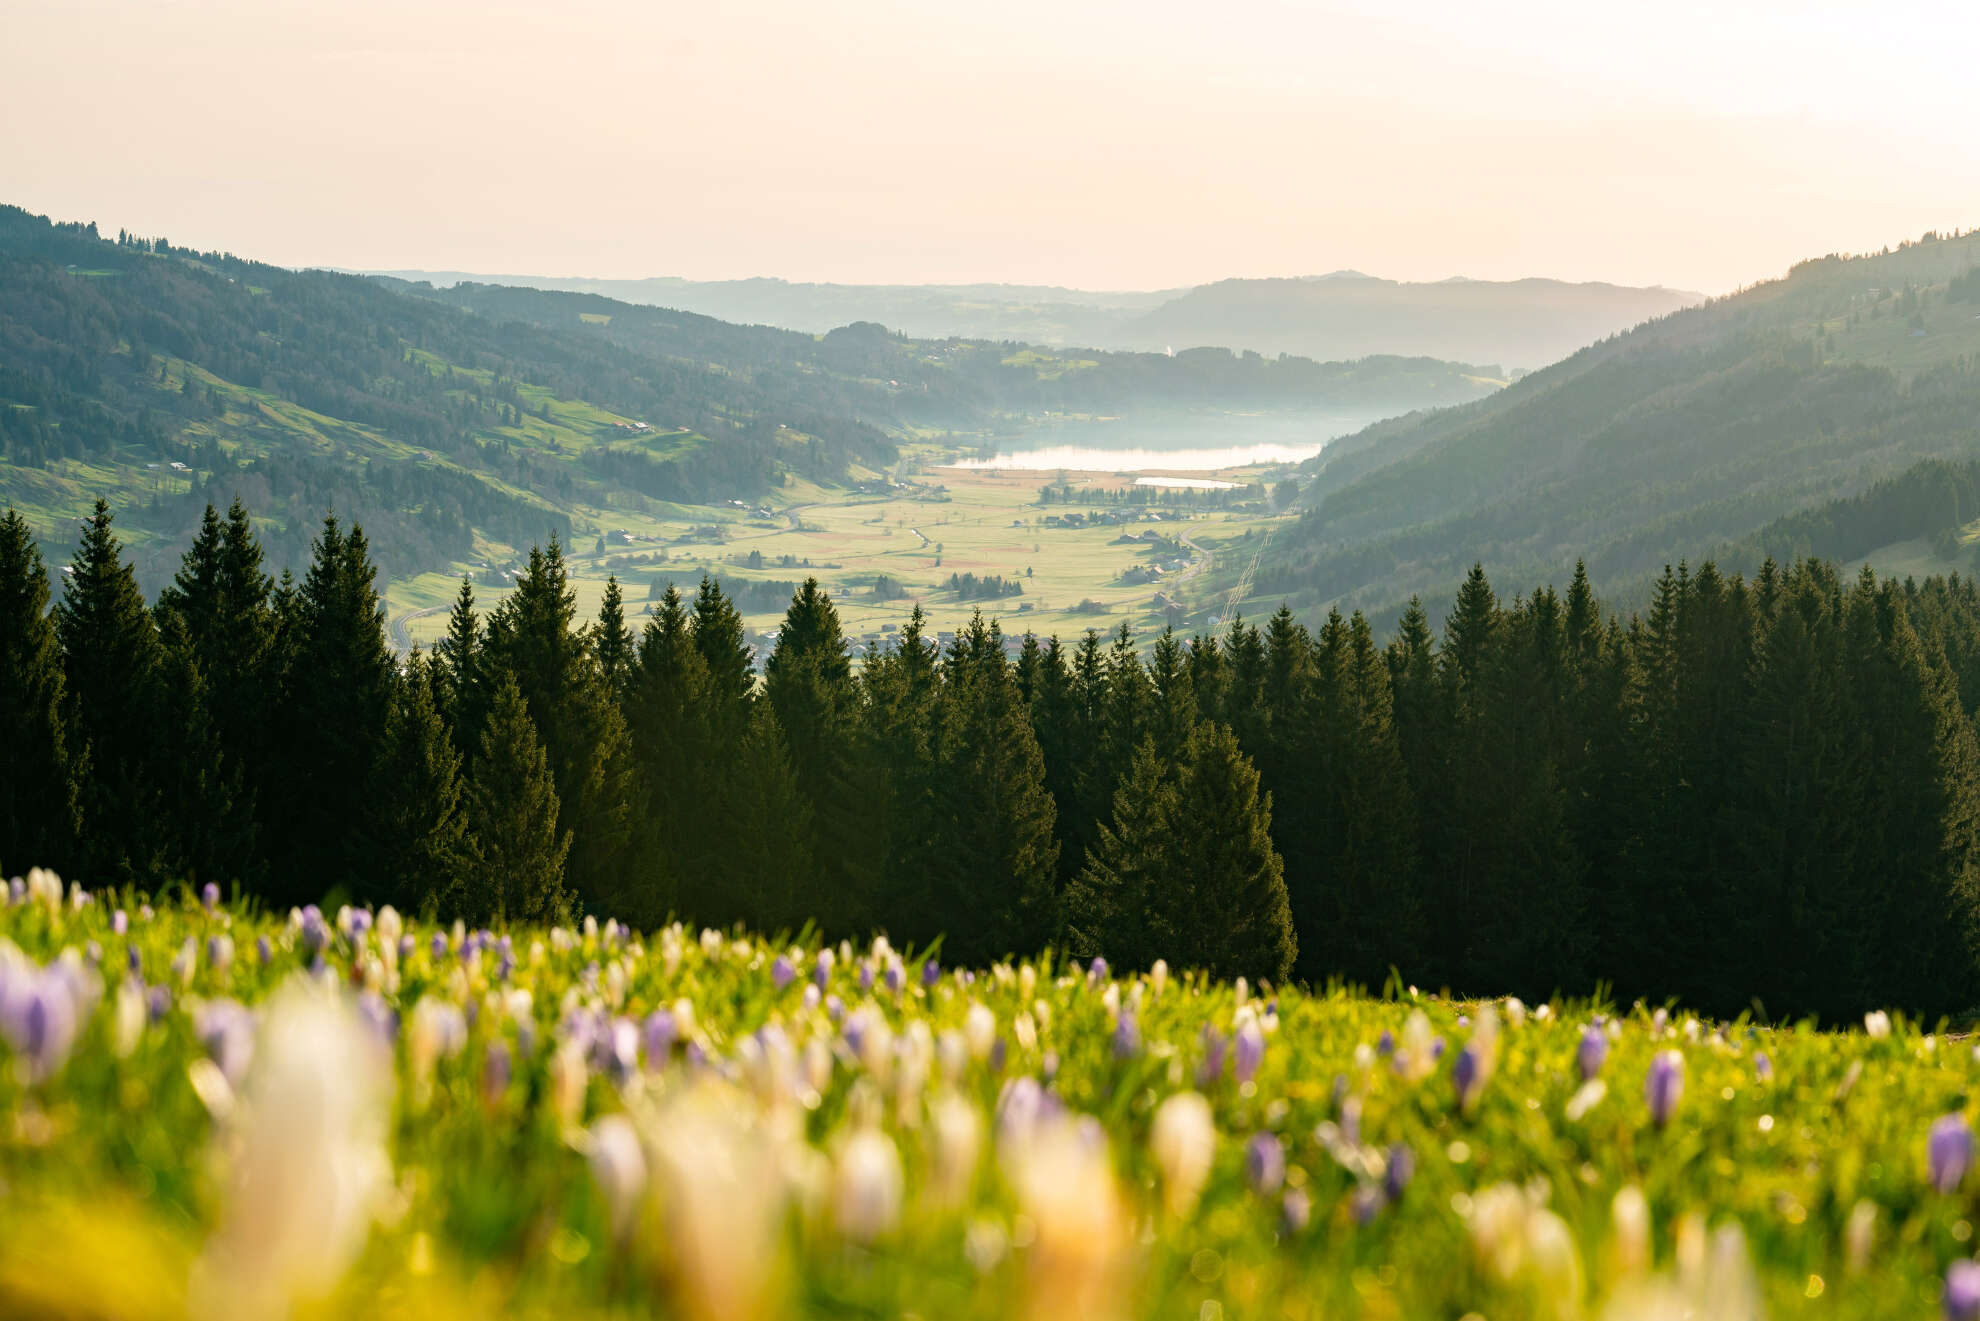 Entdecke die aufblühende Allgäuer Natur bei einem Frühlingswanderung durch die Krokusblütenfelder am Hündle in Oberstaufen.